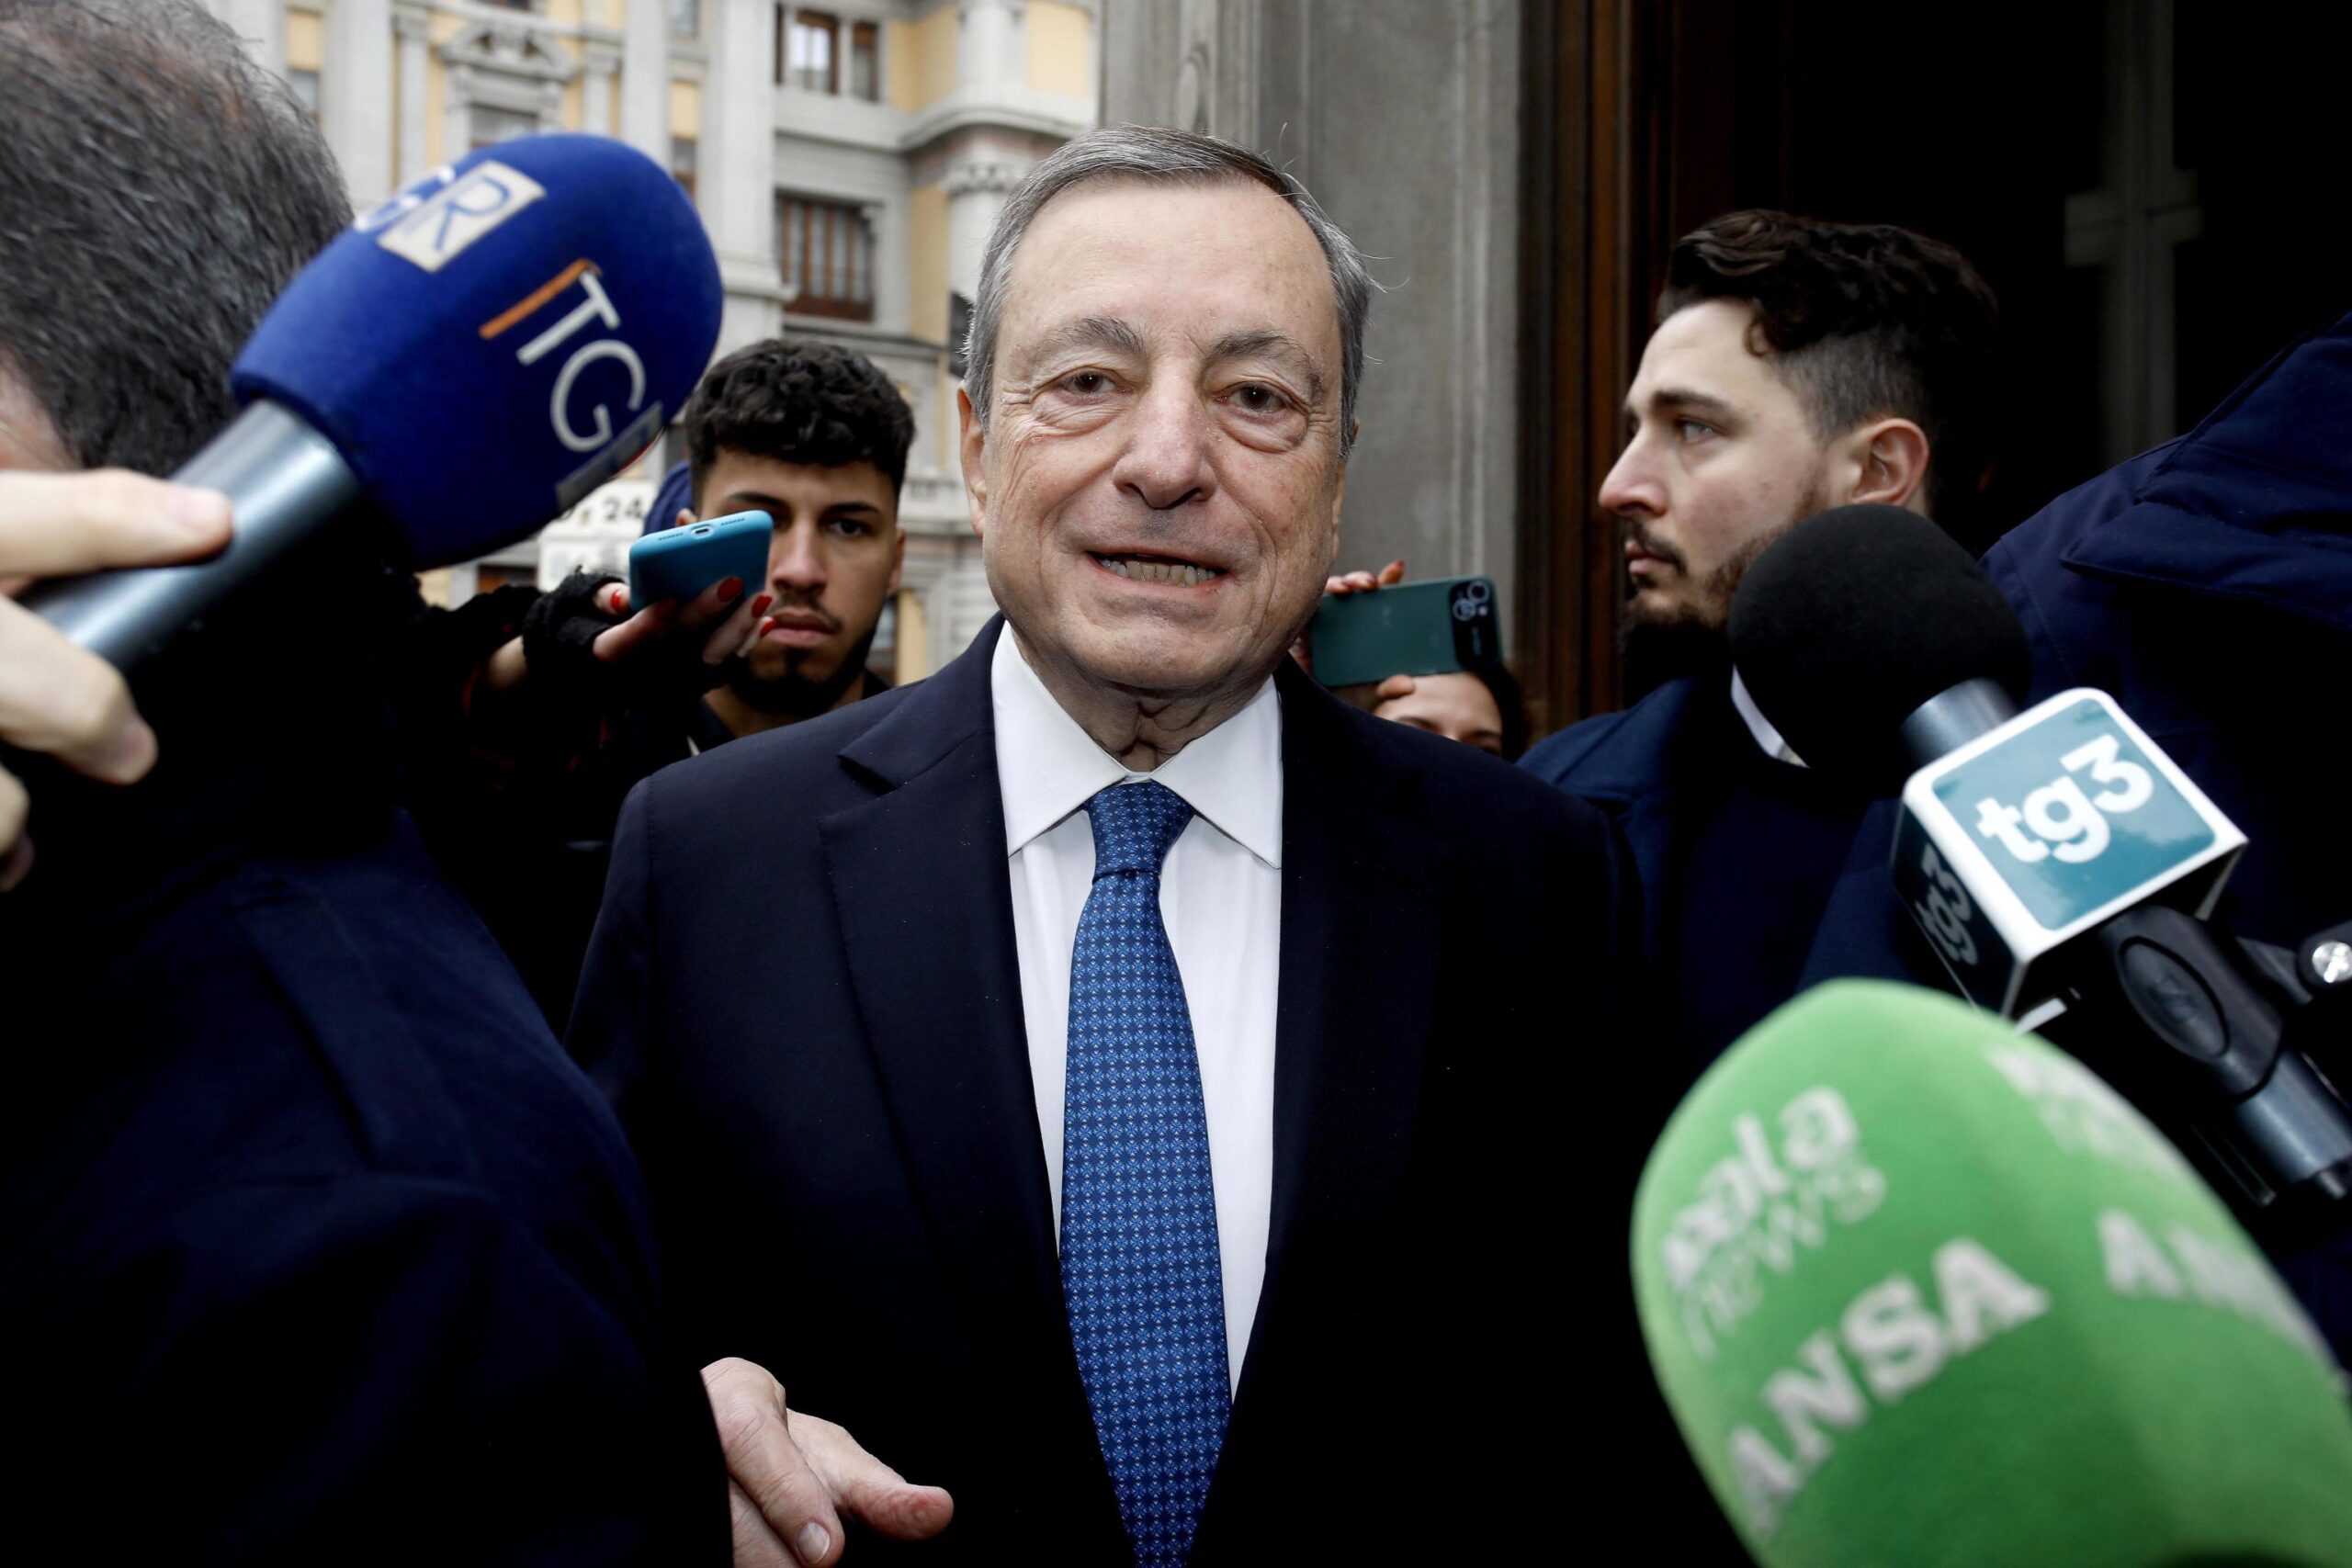 La scossa di Mario Draghi all’Europa: «Proporrò cambiamenti radicali: dobbiamo agire insieme come mai abbiamo fatto prima»